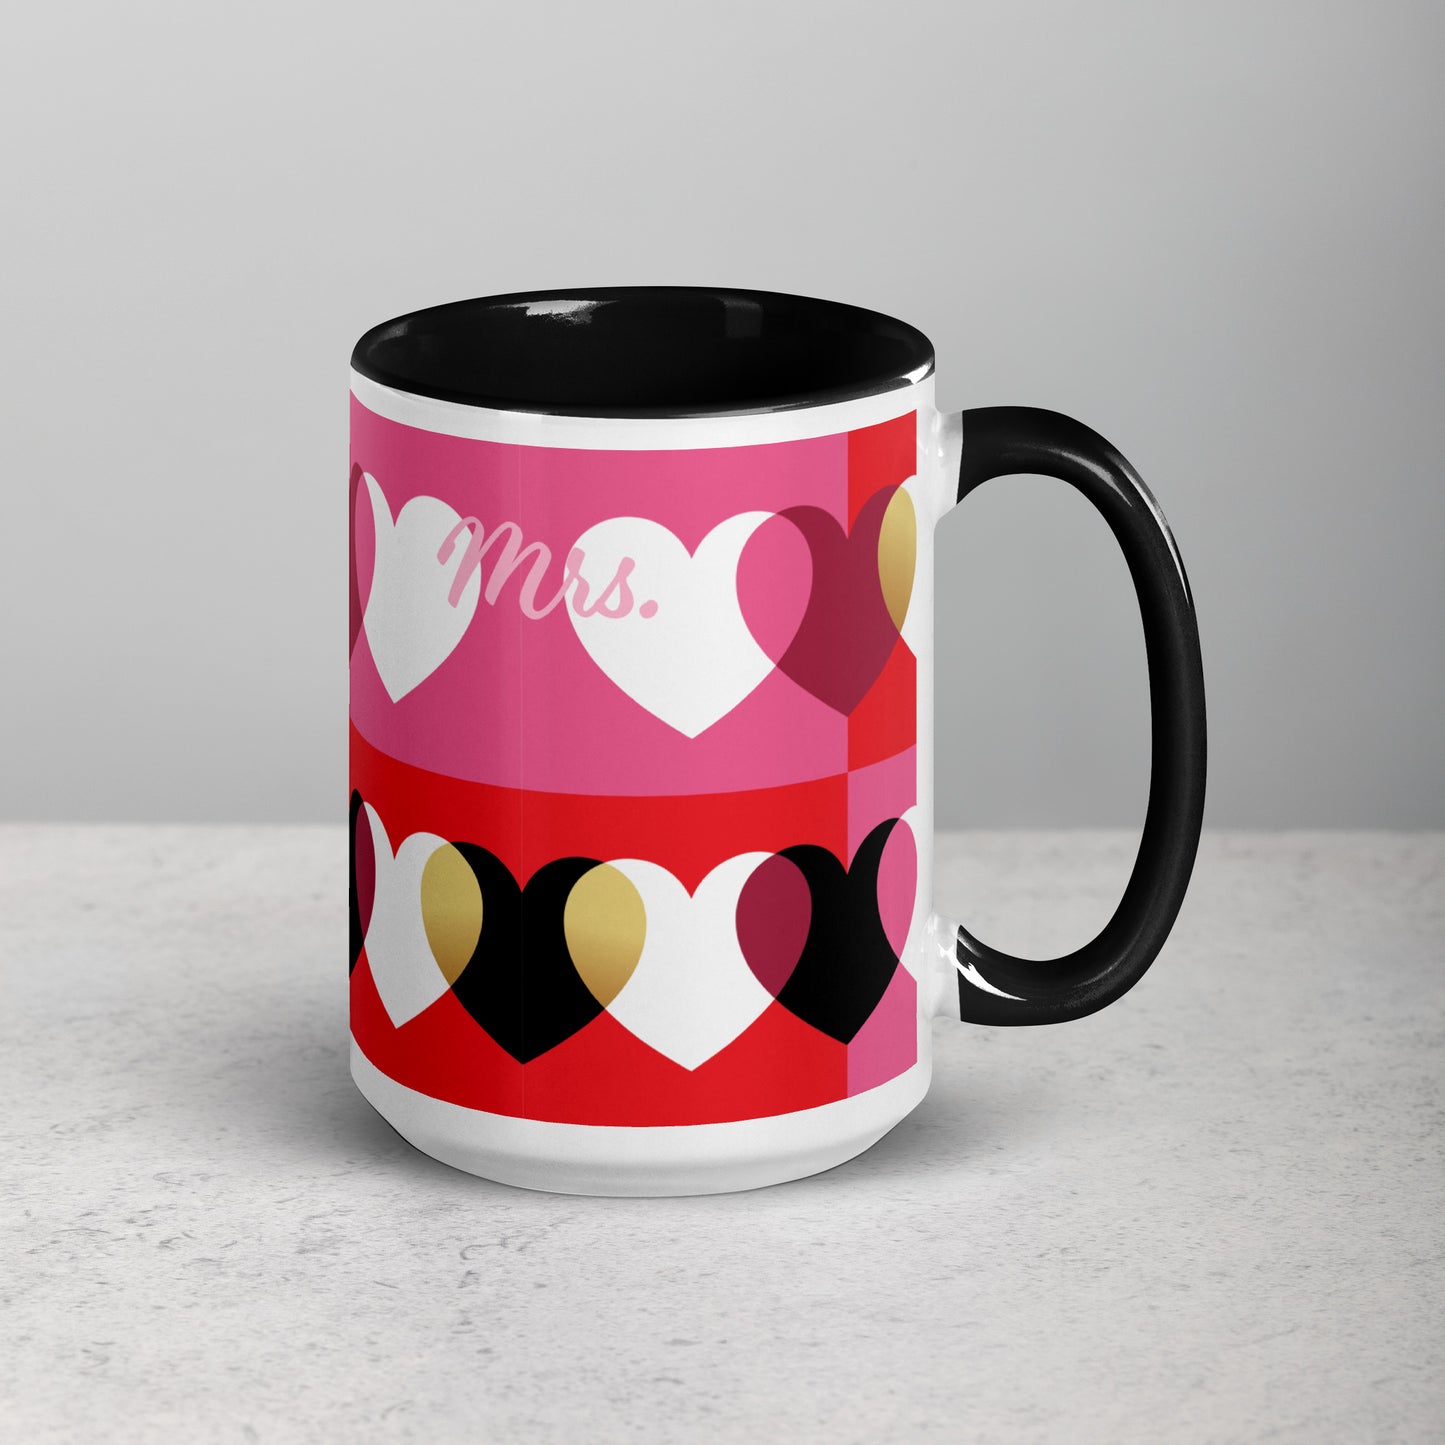 Love Mug set de 2, negro y rojo, Sr. y Sra., personalizado